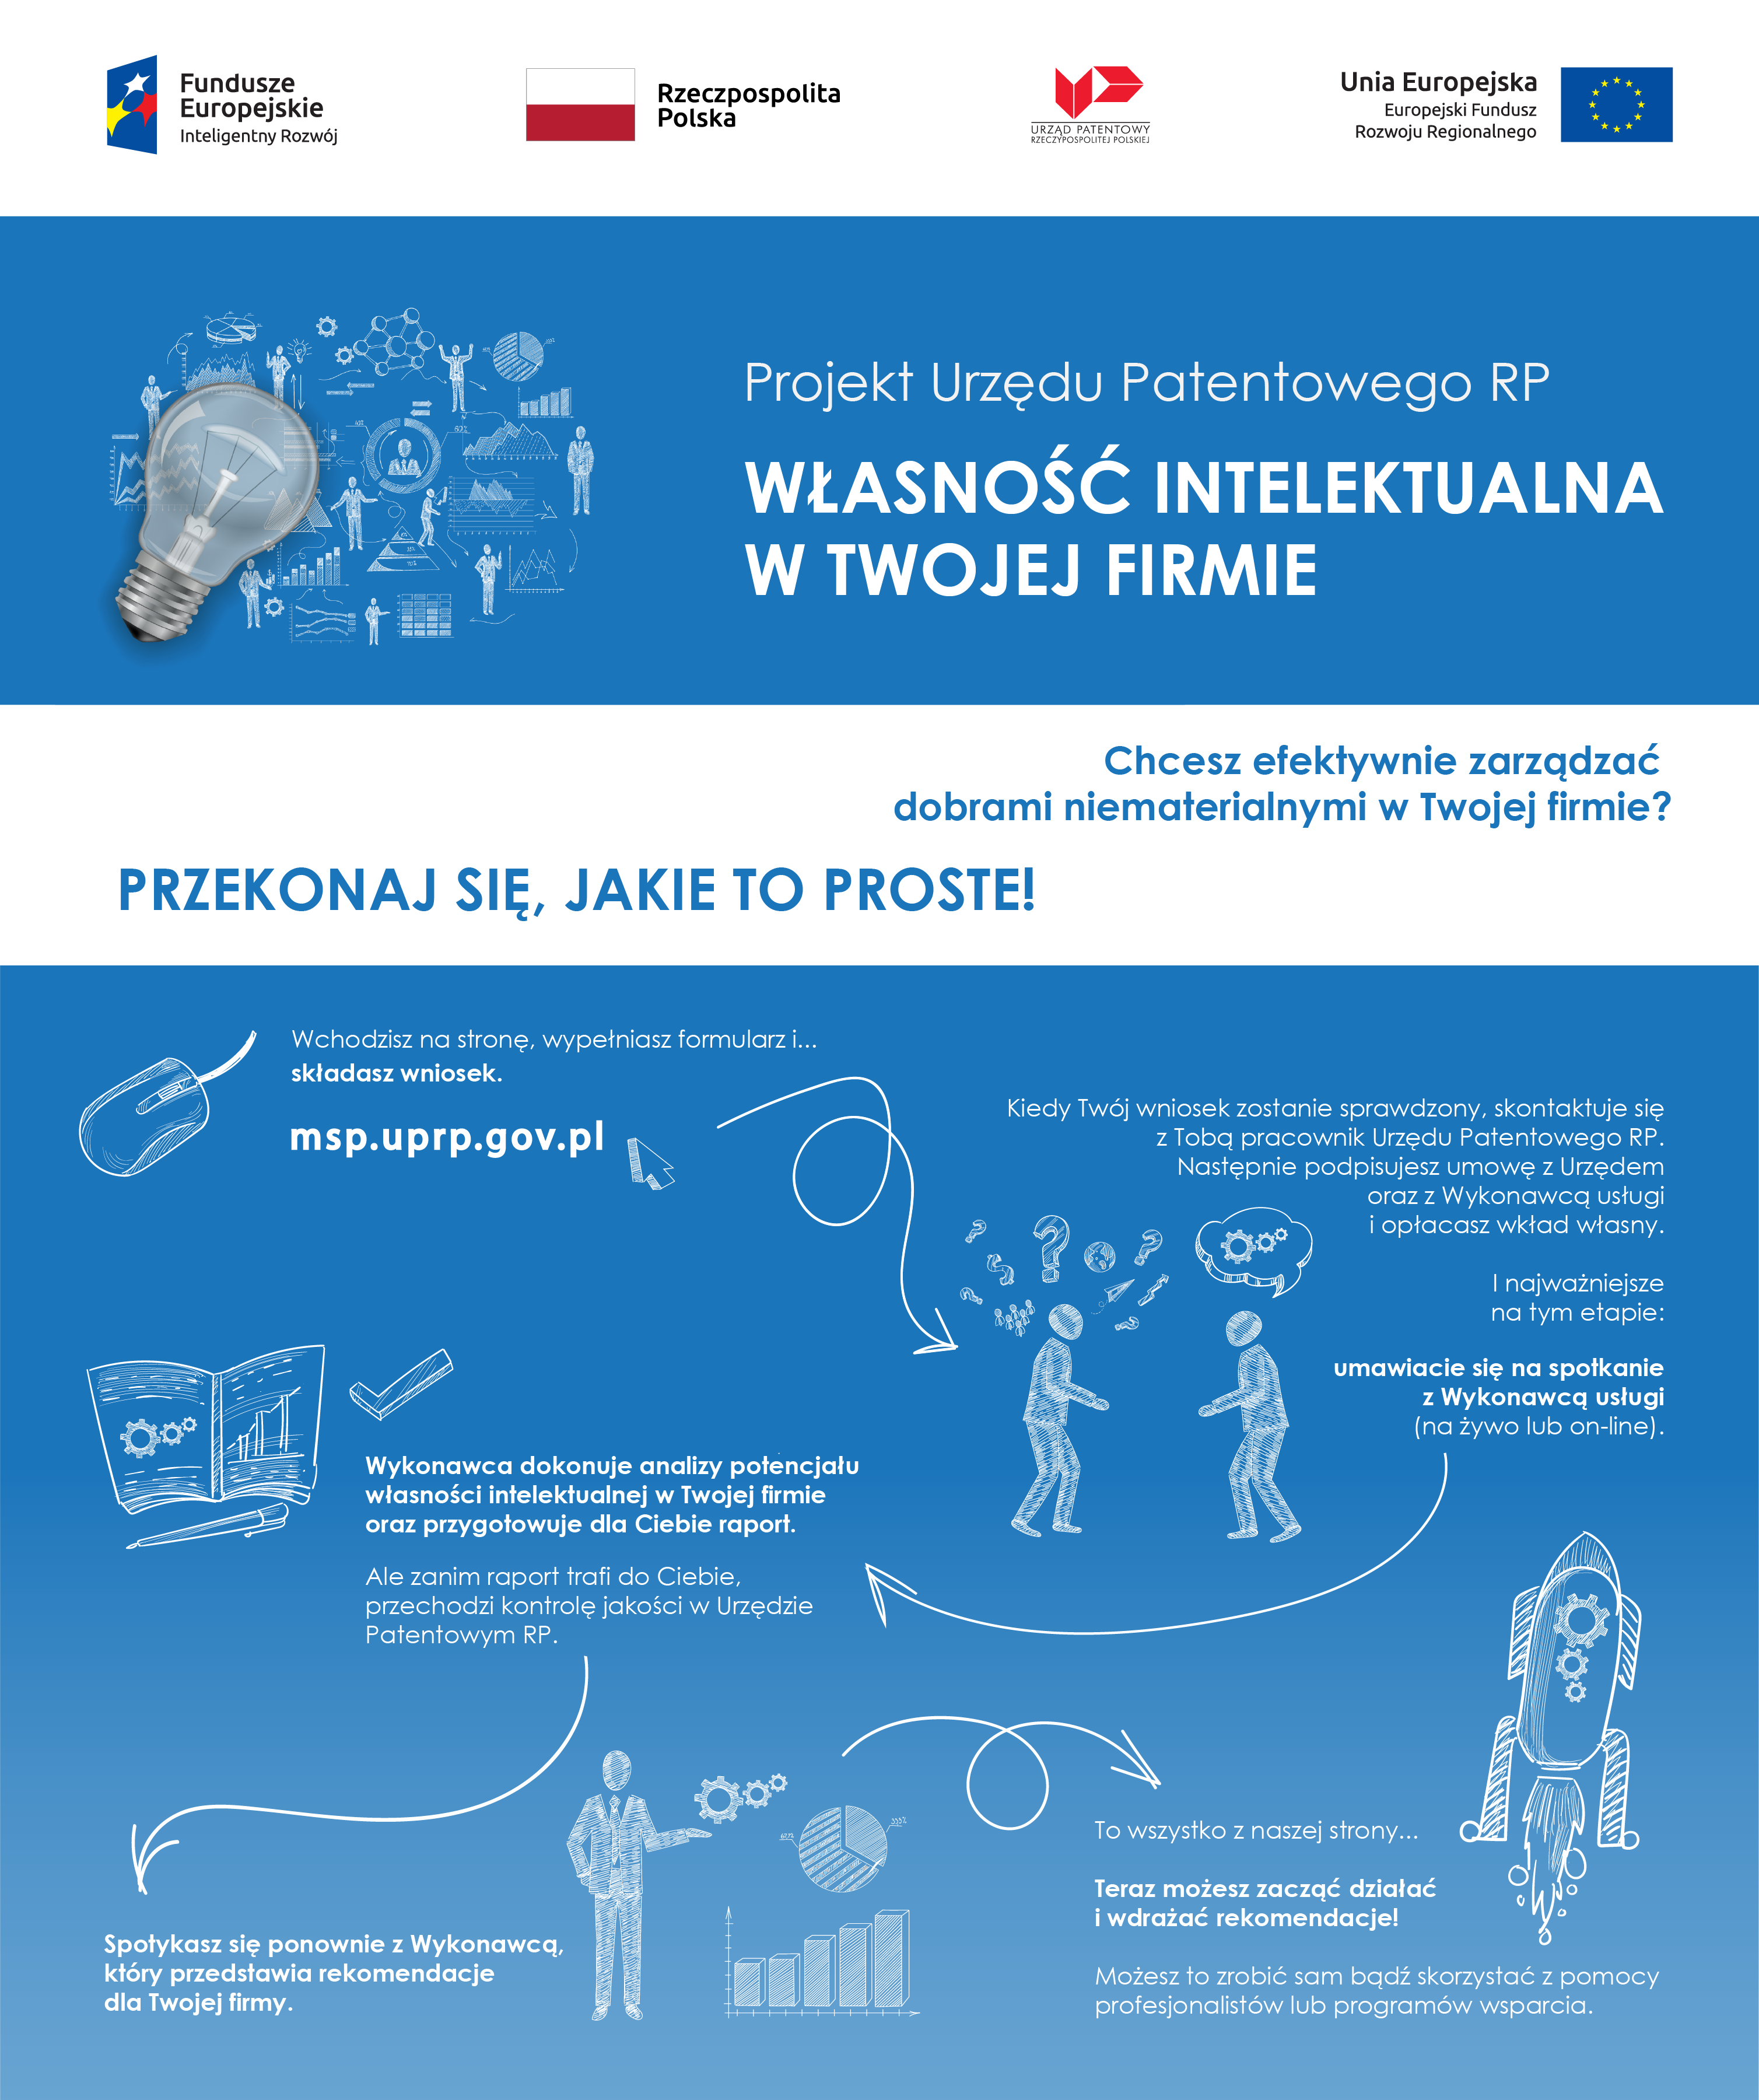 Projekt Urzędu Patentowego RP Własność Intelektualna w Twojej Firmie - infografika.png